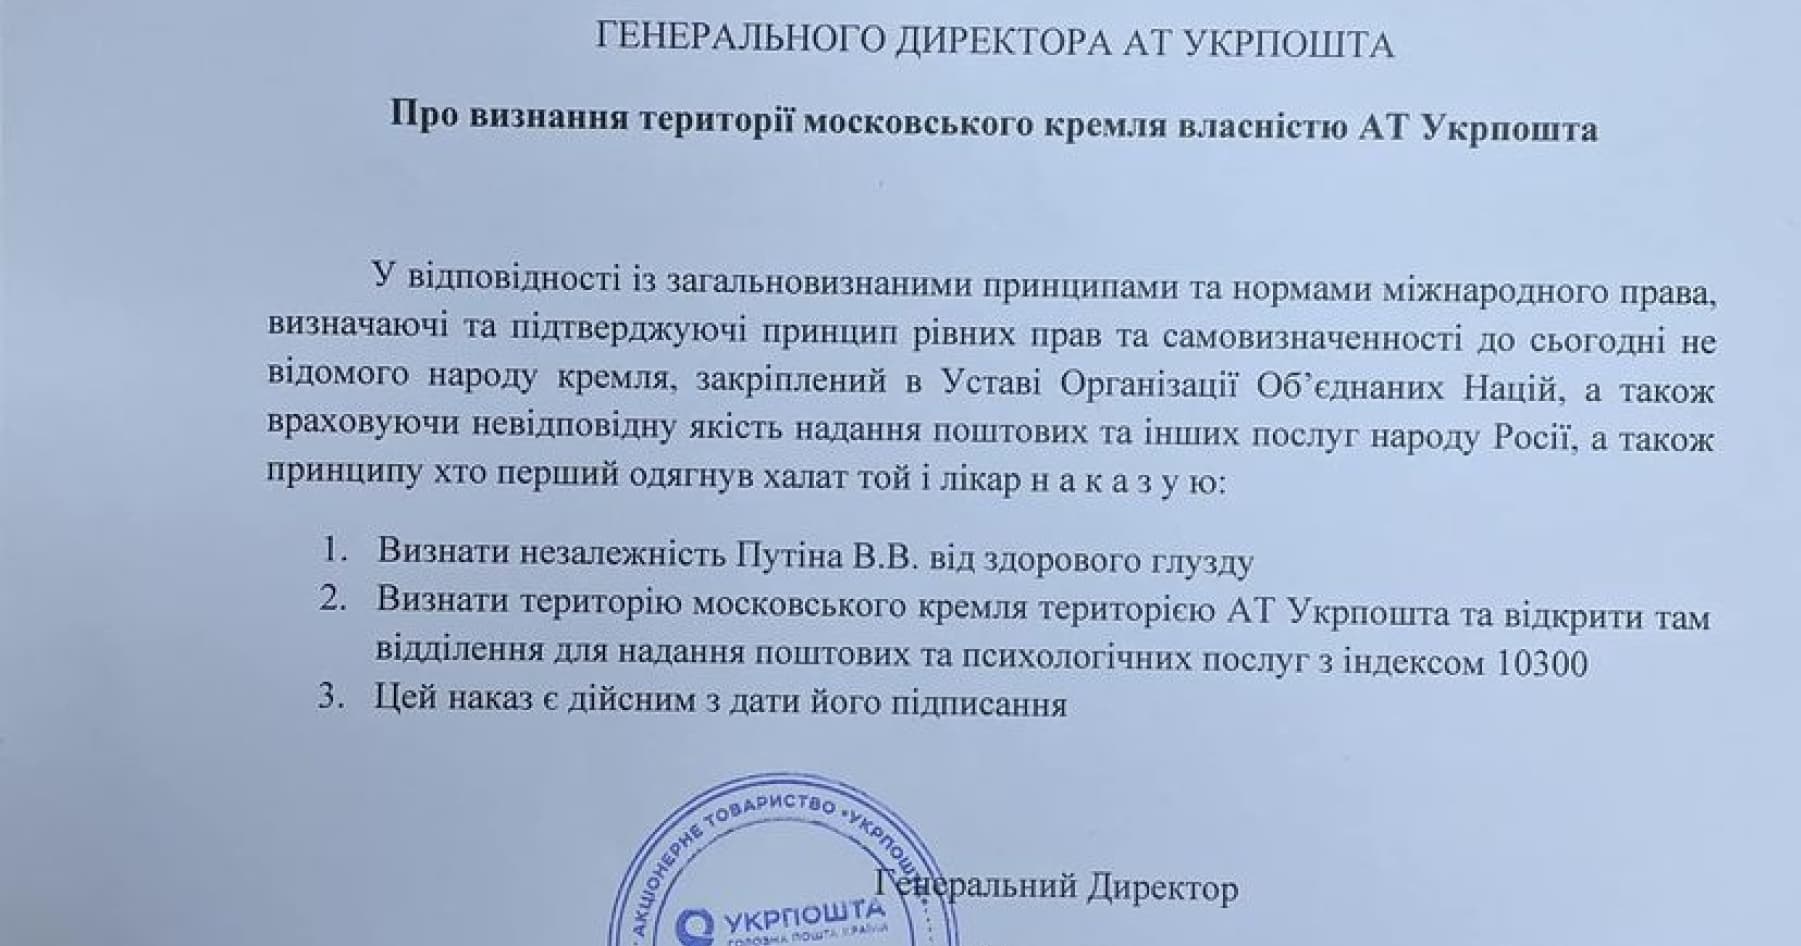 Гендиректор «Укрпошти» видав жартівливий «наказ» про визнання території Кремля територією «Укрпошти»